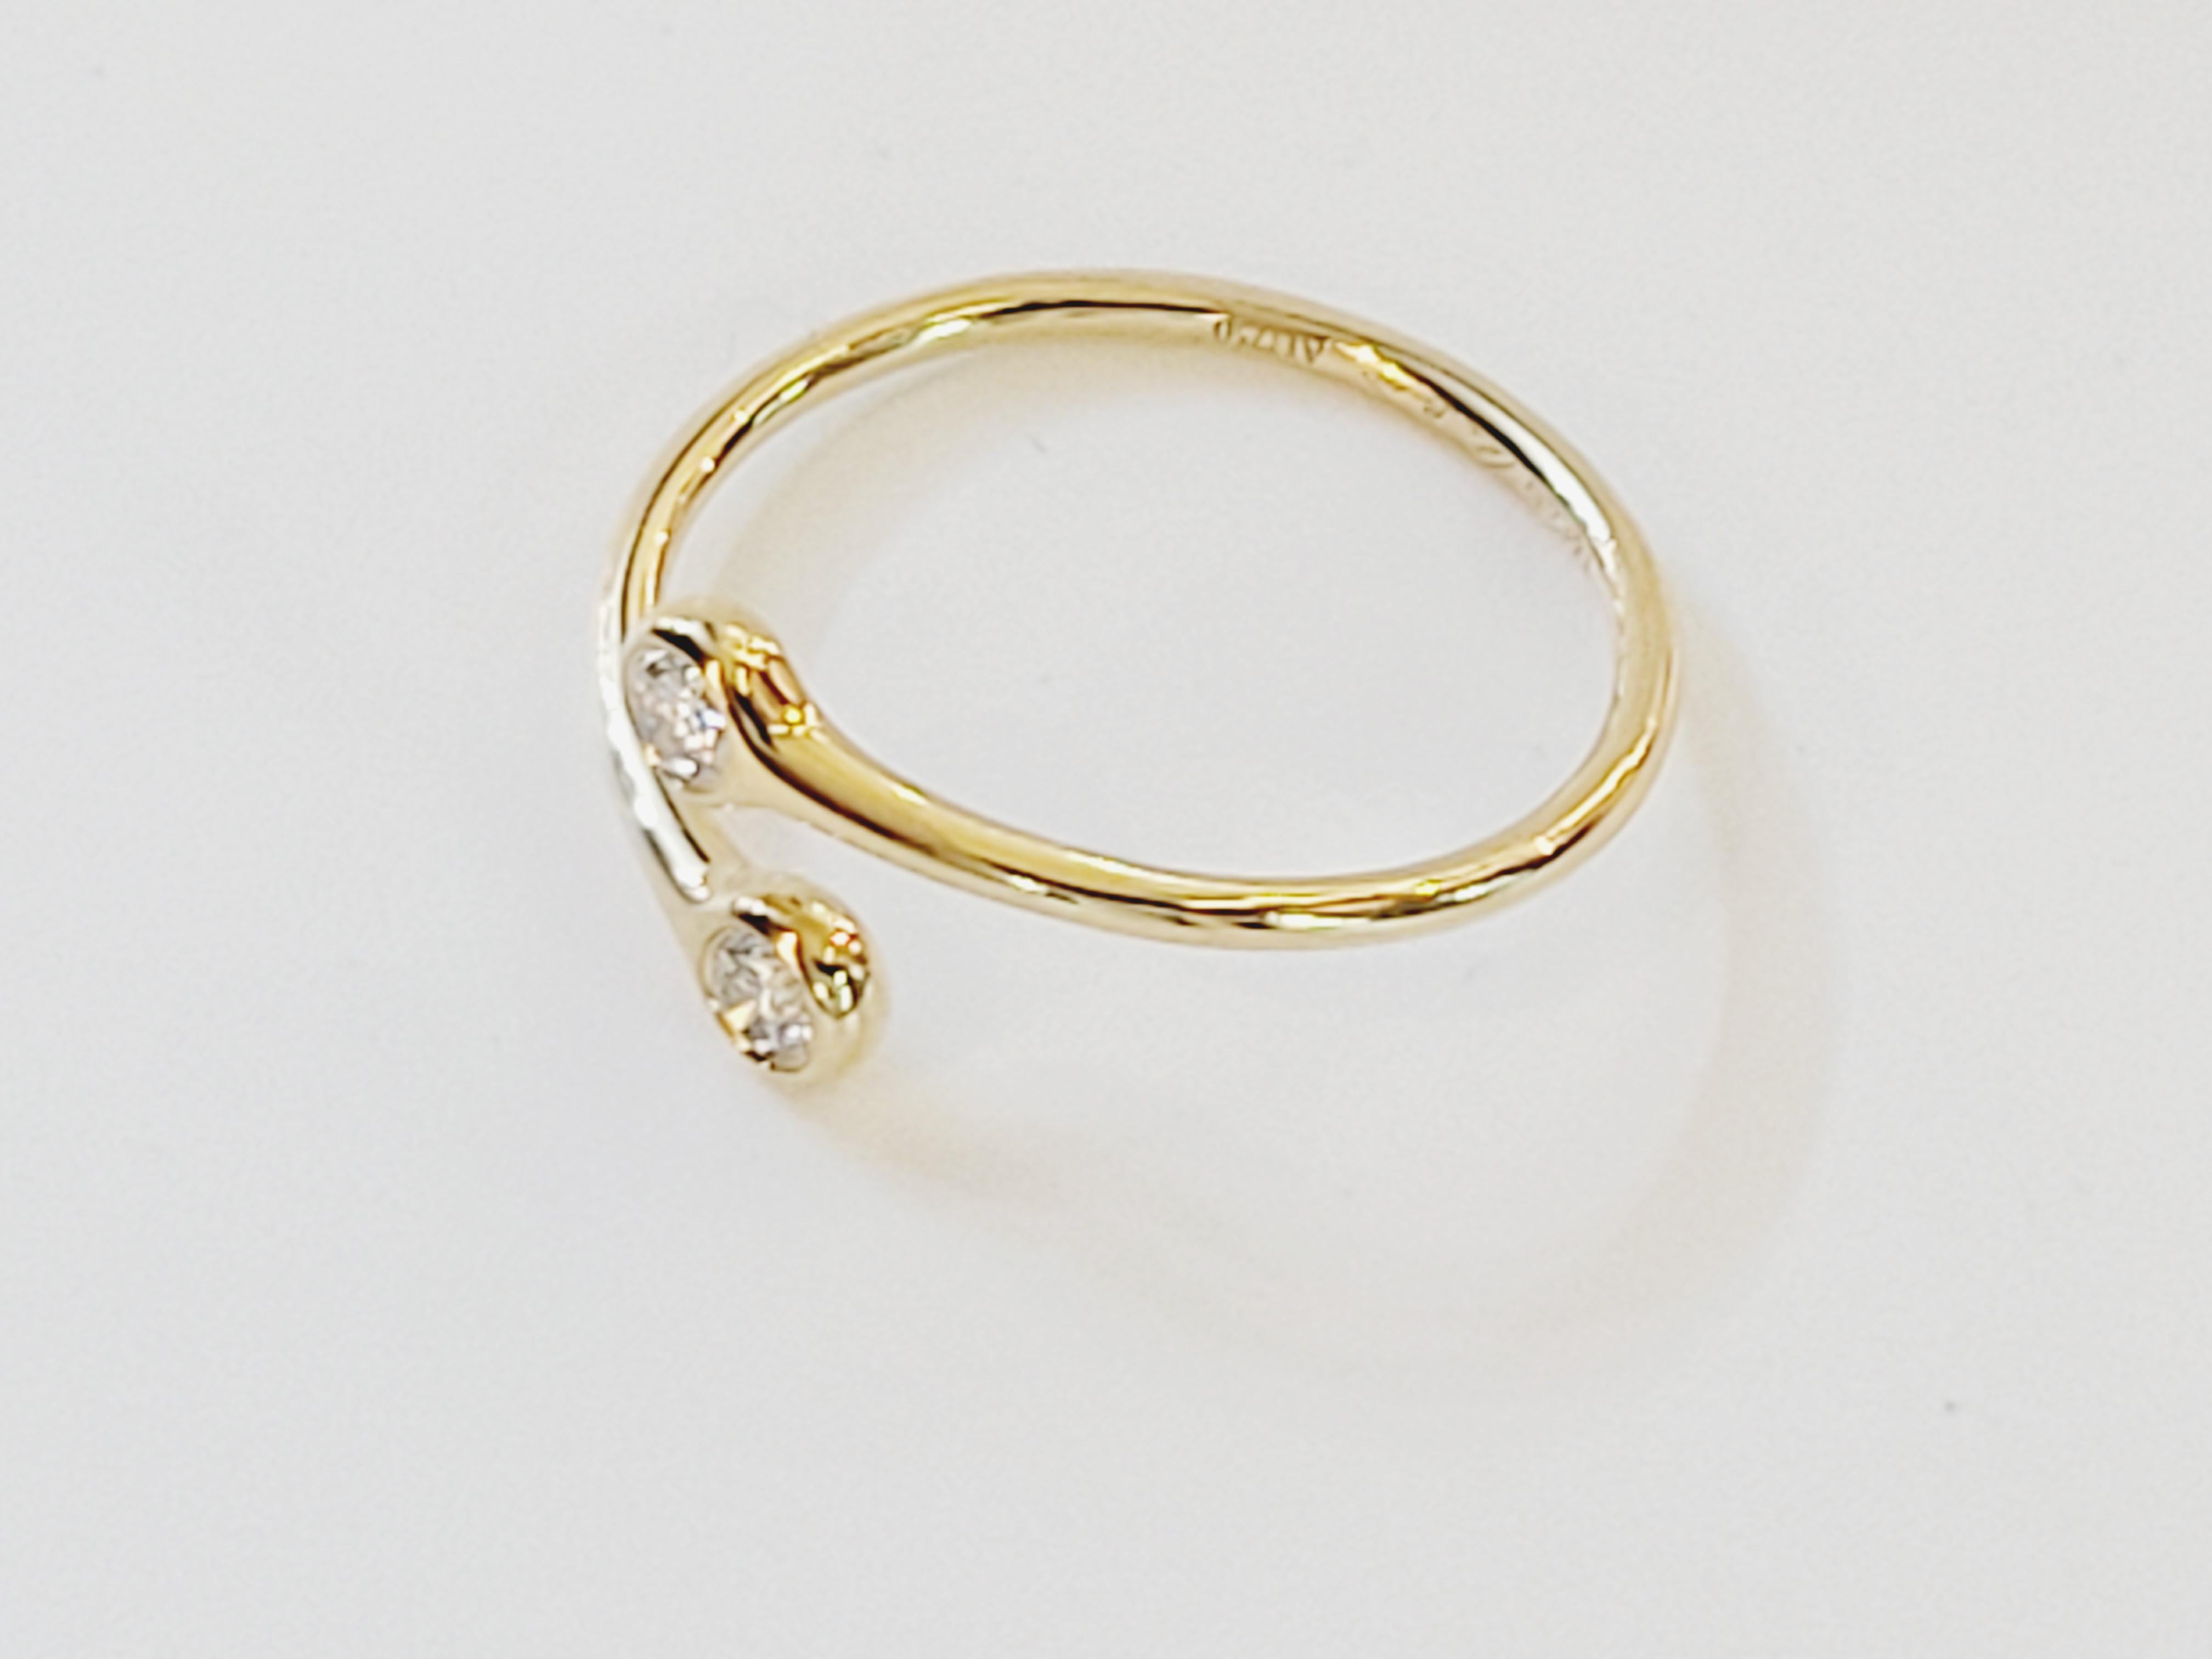 Marke tiffany & co
Neuwertiger Zustand
Typ Ring
Ring Größe 6
Hauptstein Diamant
Metall Gelbgold
Metallreinheit 18k
Ring 1,5g
Kommt mit Tiffany & Co Box 
